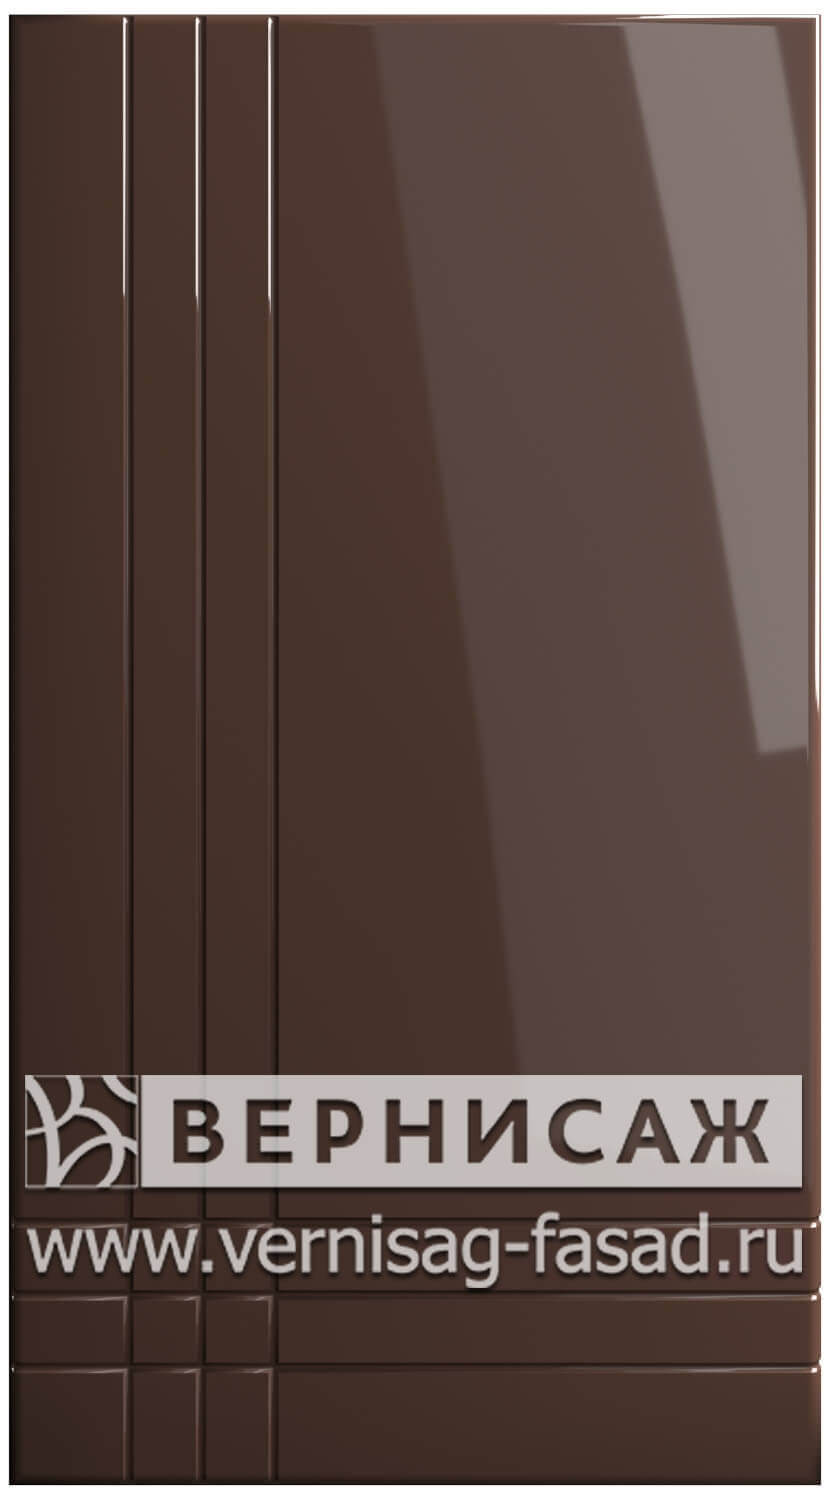 Фасады в пленке ПВХ, Фрезеровка № 18, цвет Капучино глянец